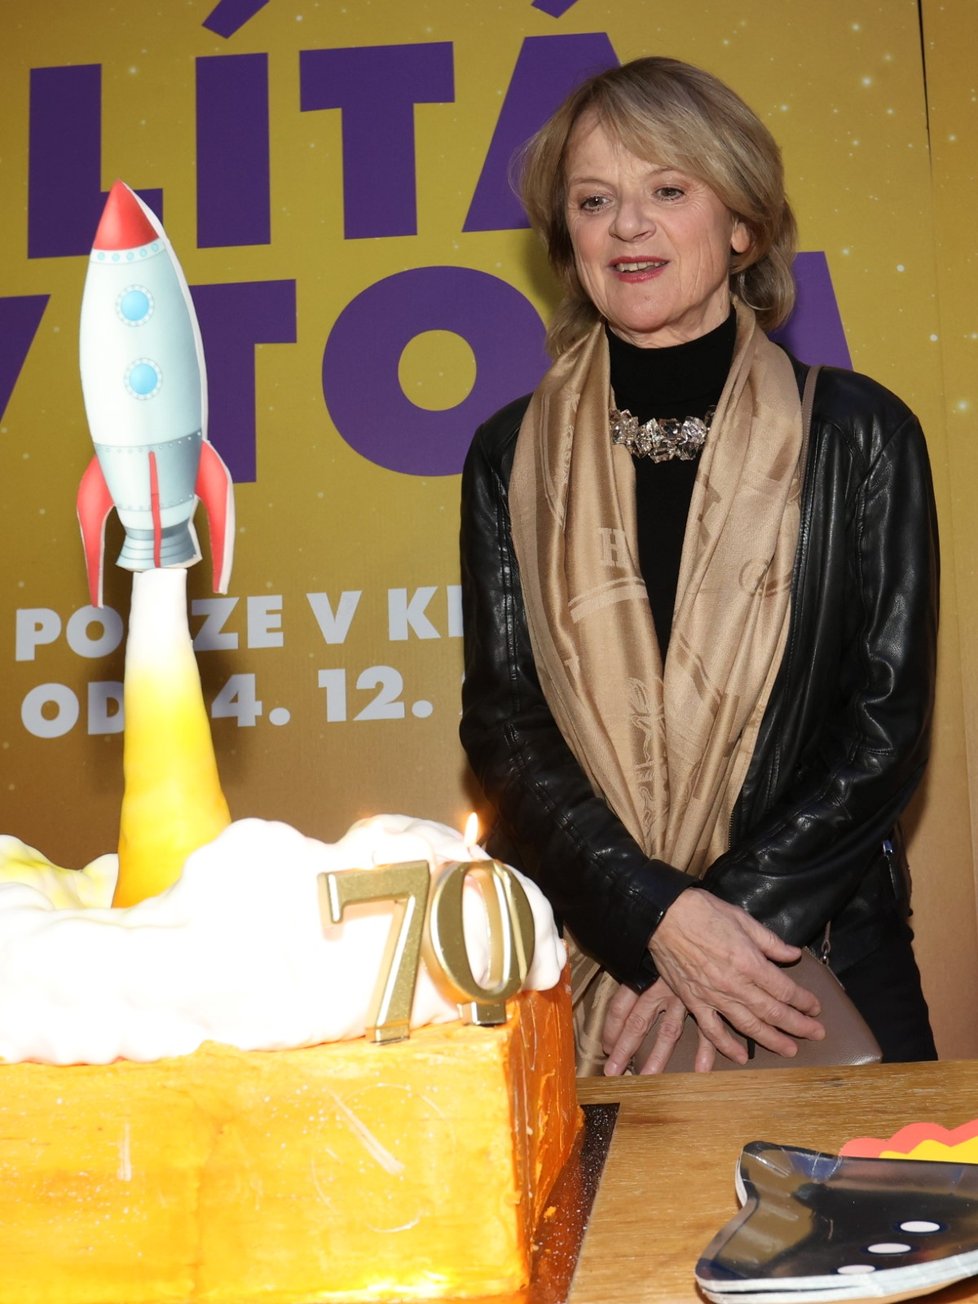 Planetárium Stromovka: Představení komedie Lítá v tom a oslava 70. narozenin Taťjany Medvecké